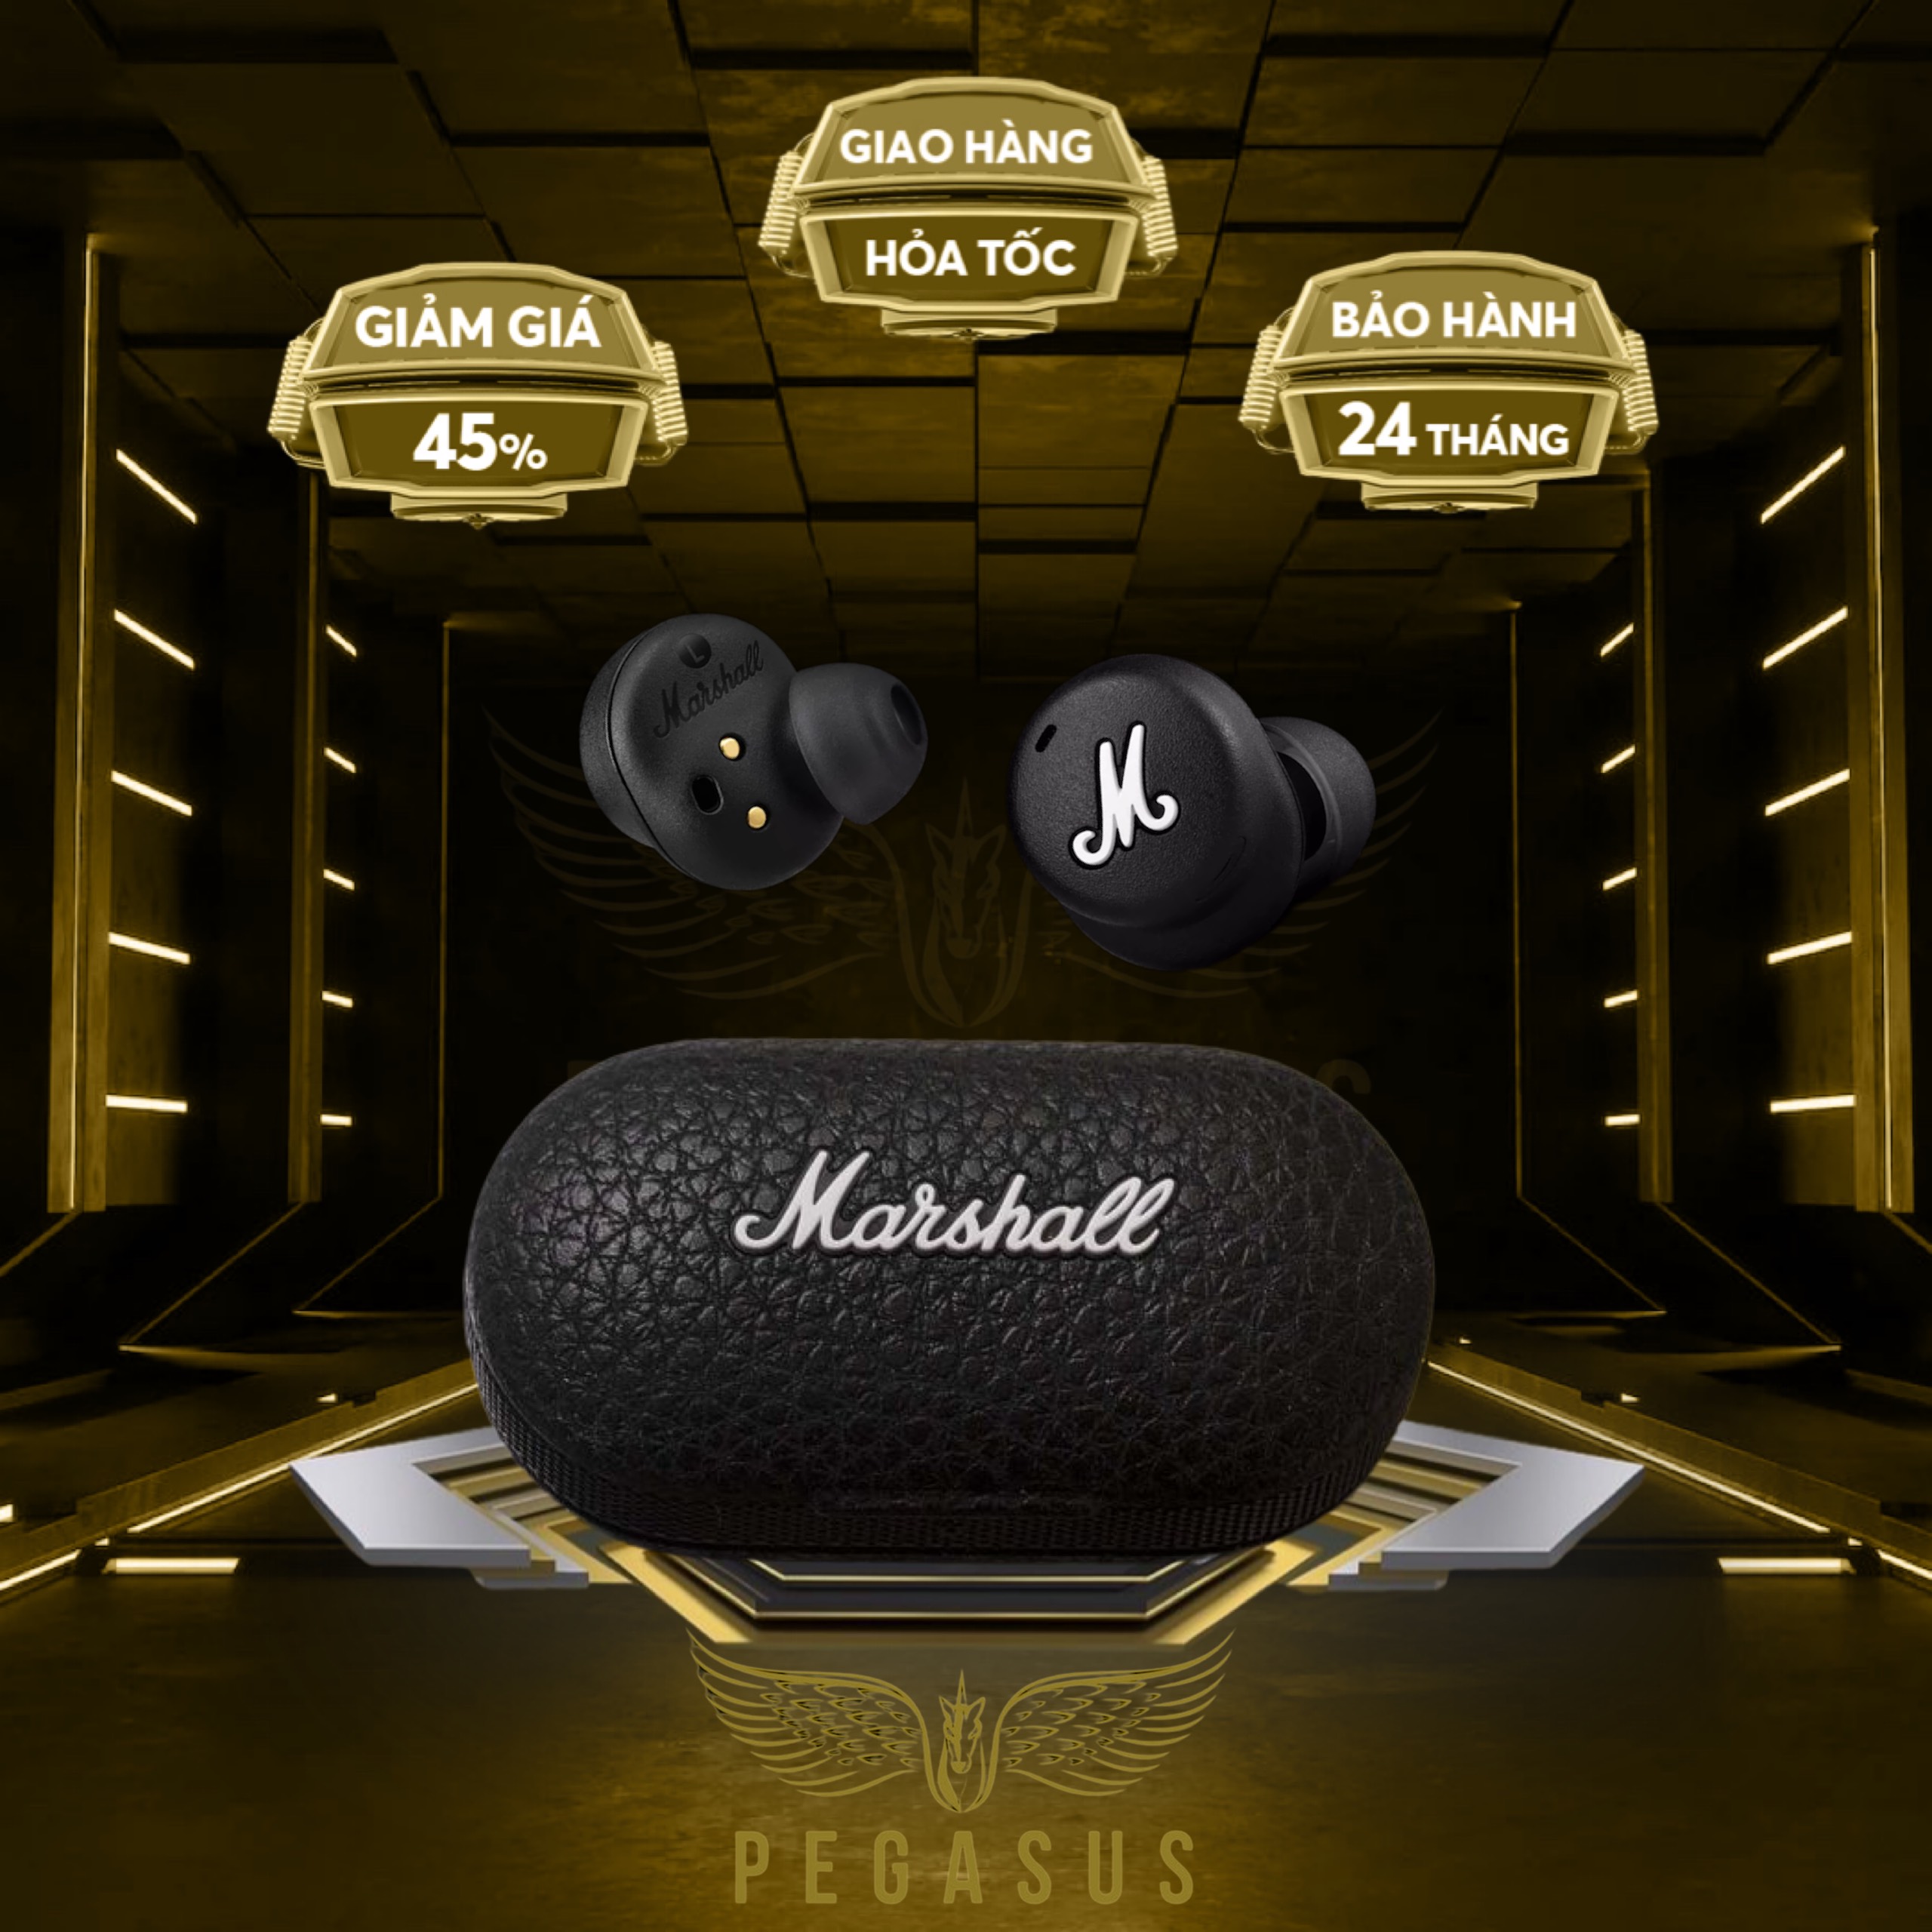 Tai Nghe Bluetooth Marshall Mode 2 bản siêu cao cấp , bass mạnh mẽ, Chống ồn ANC, Chuẩn âm thanh Studio , kháng nước tốt, chuẩn chống nước IPX5